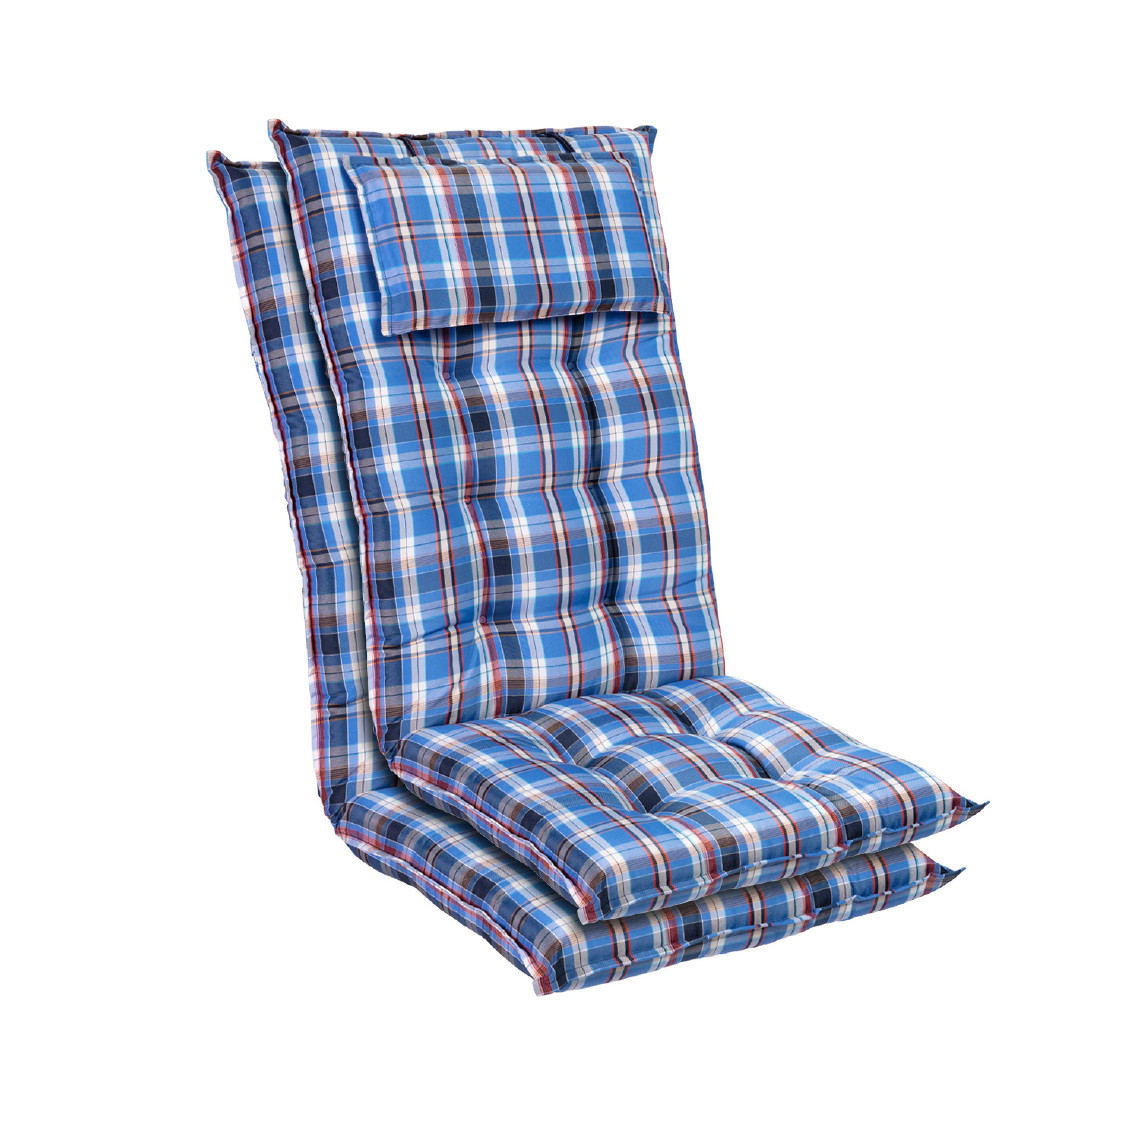 Blumfeldt - Coussin - Blumfeldt Sylt - Pour chaise de jardin à dossier haut avec appuie-tête - Polyester - 50x120x9cm - Lot de 2 - Bleu/Blanc - Coussins, galettes de jardin